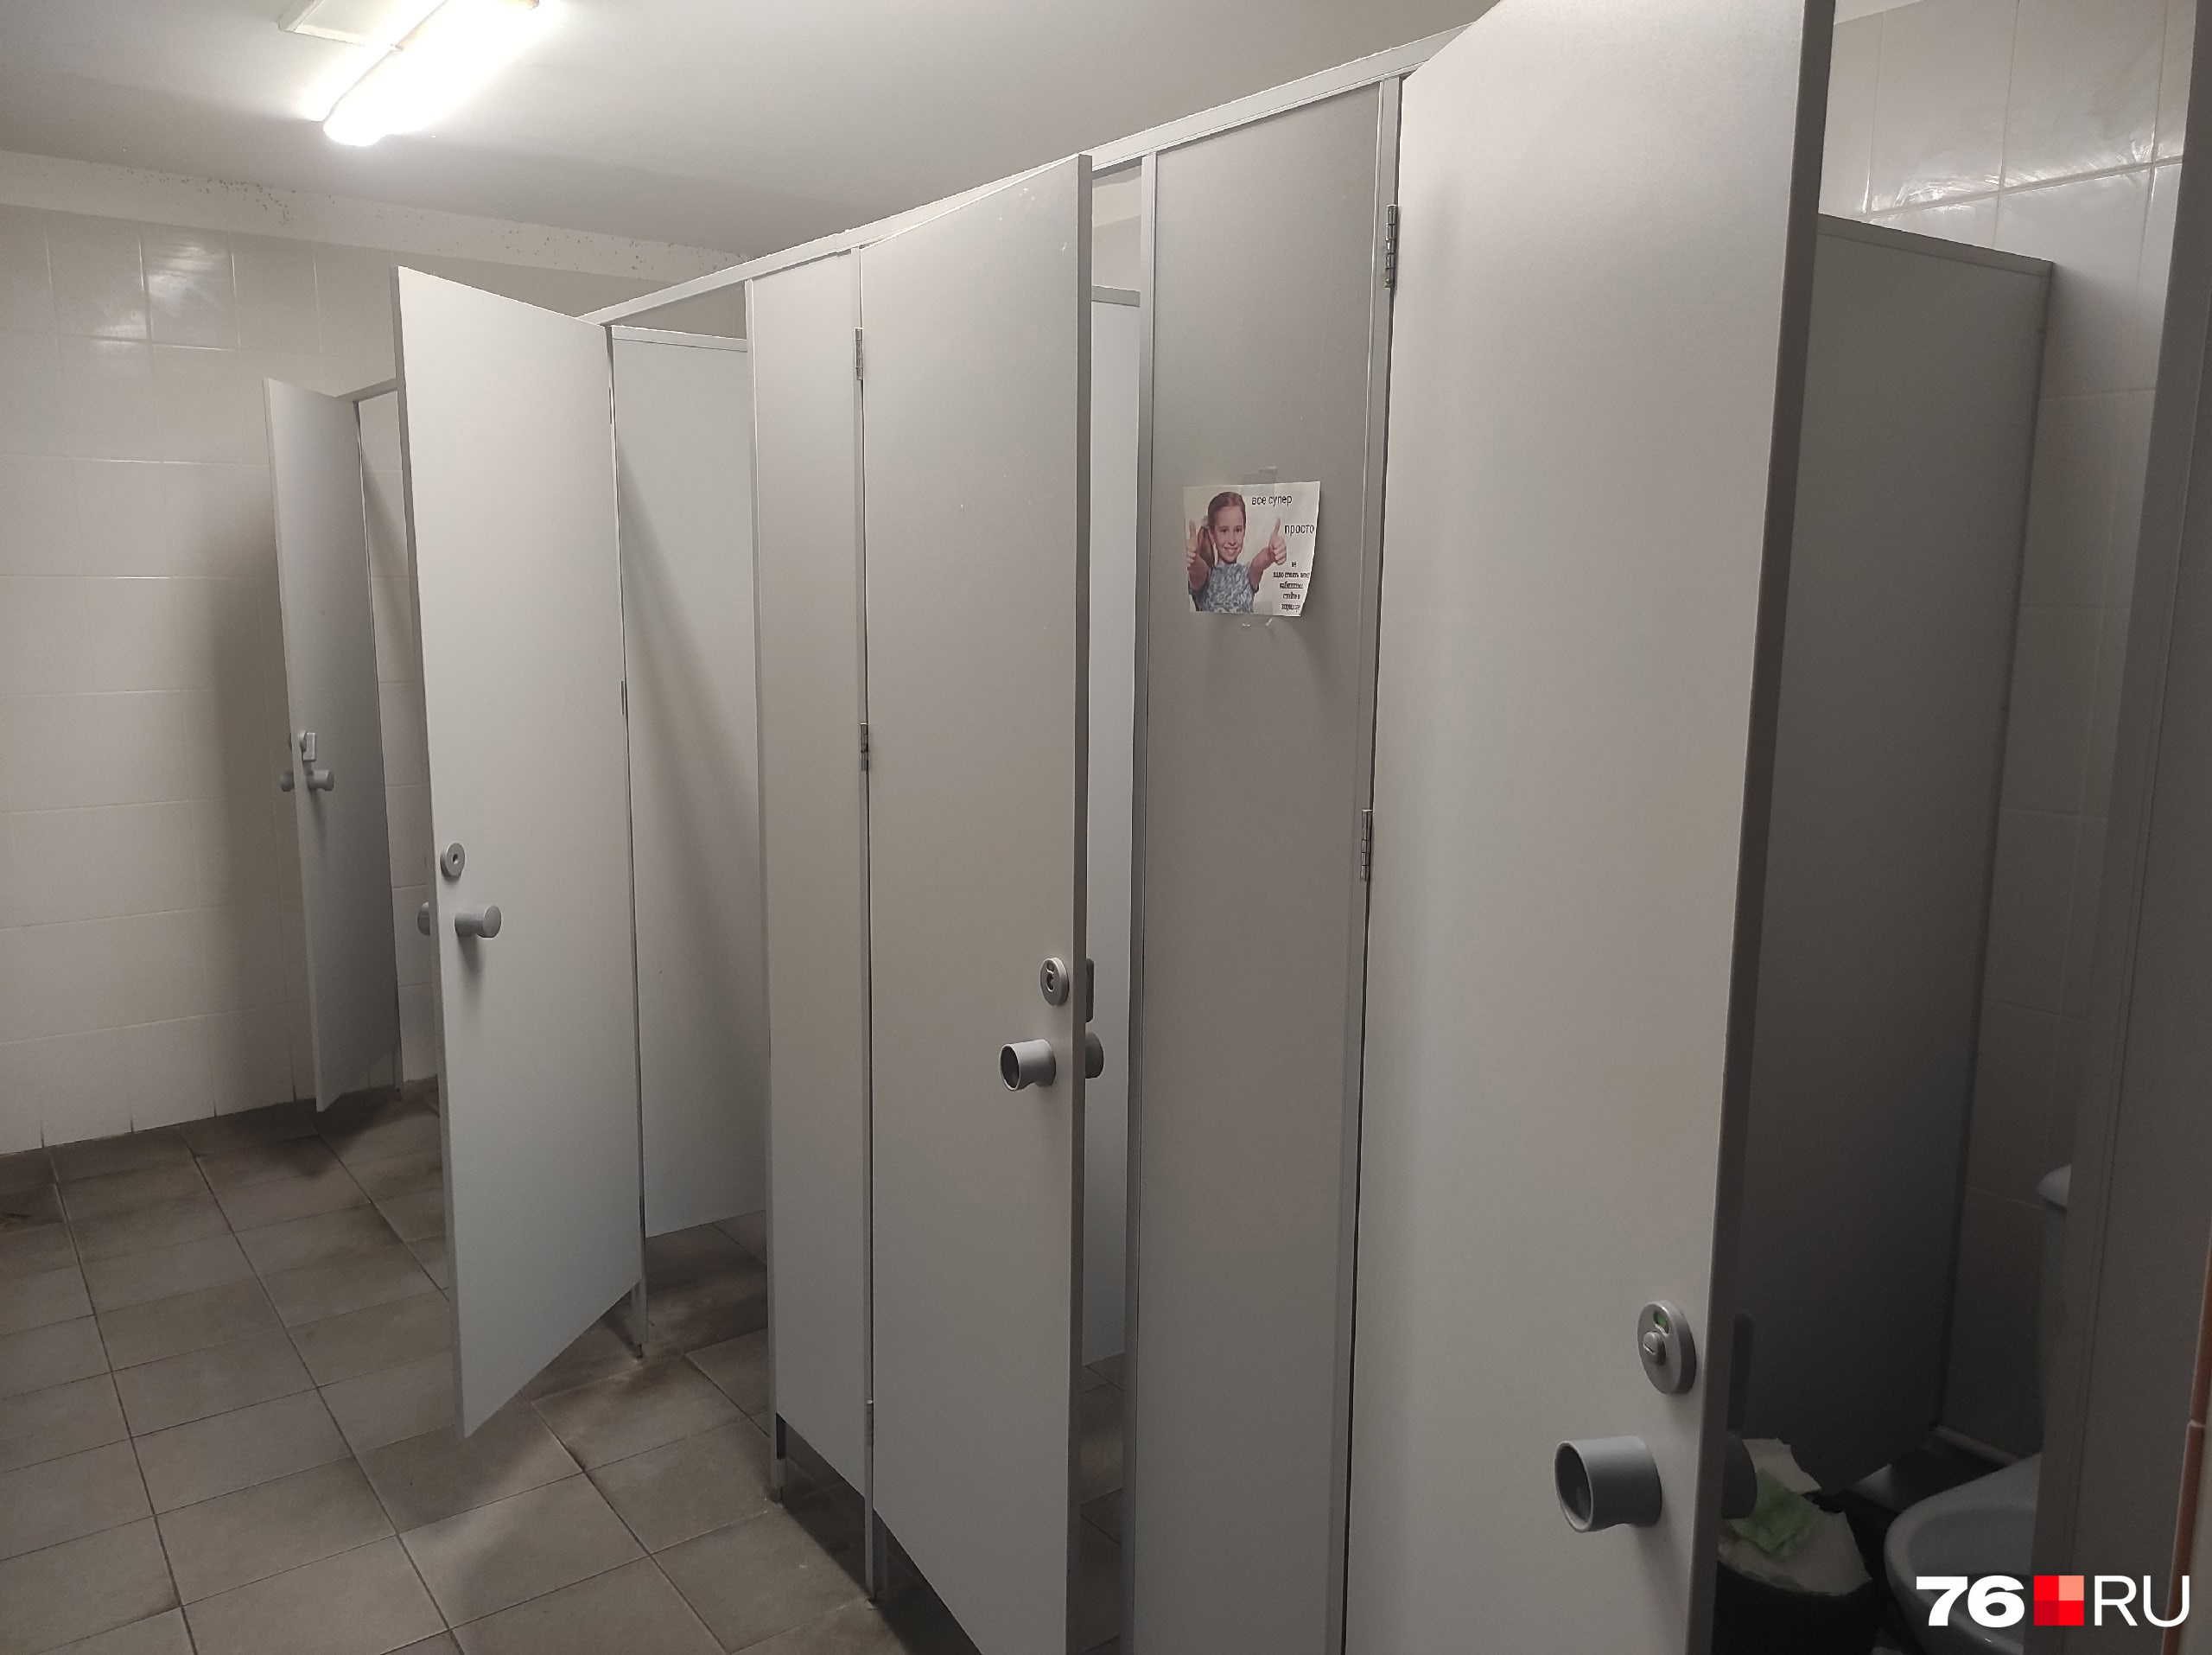 По мнению студентов, это роскошный туалет, который стараются беречь всем общежитием